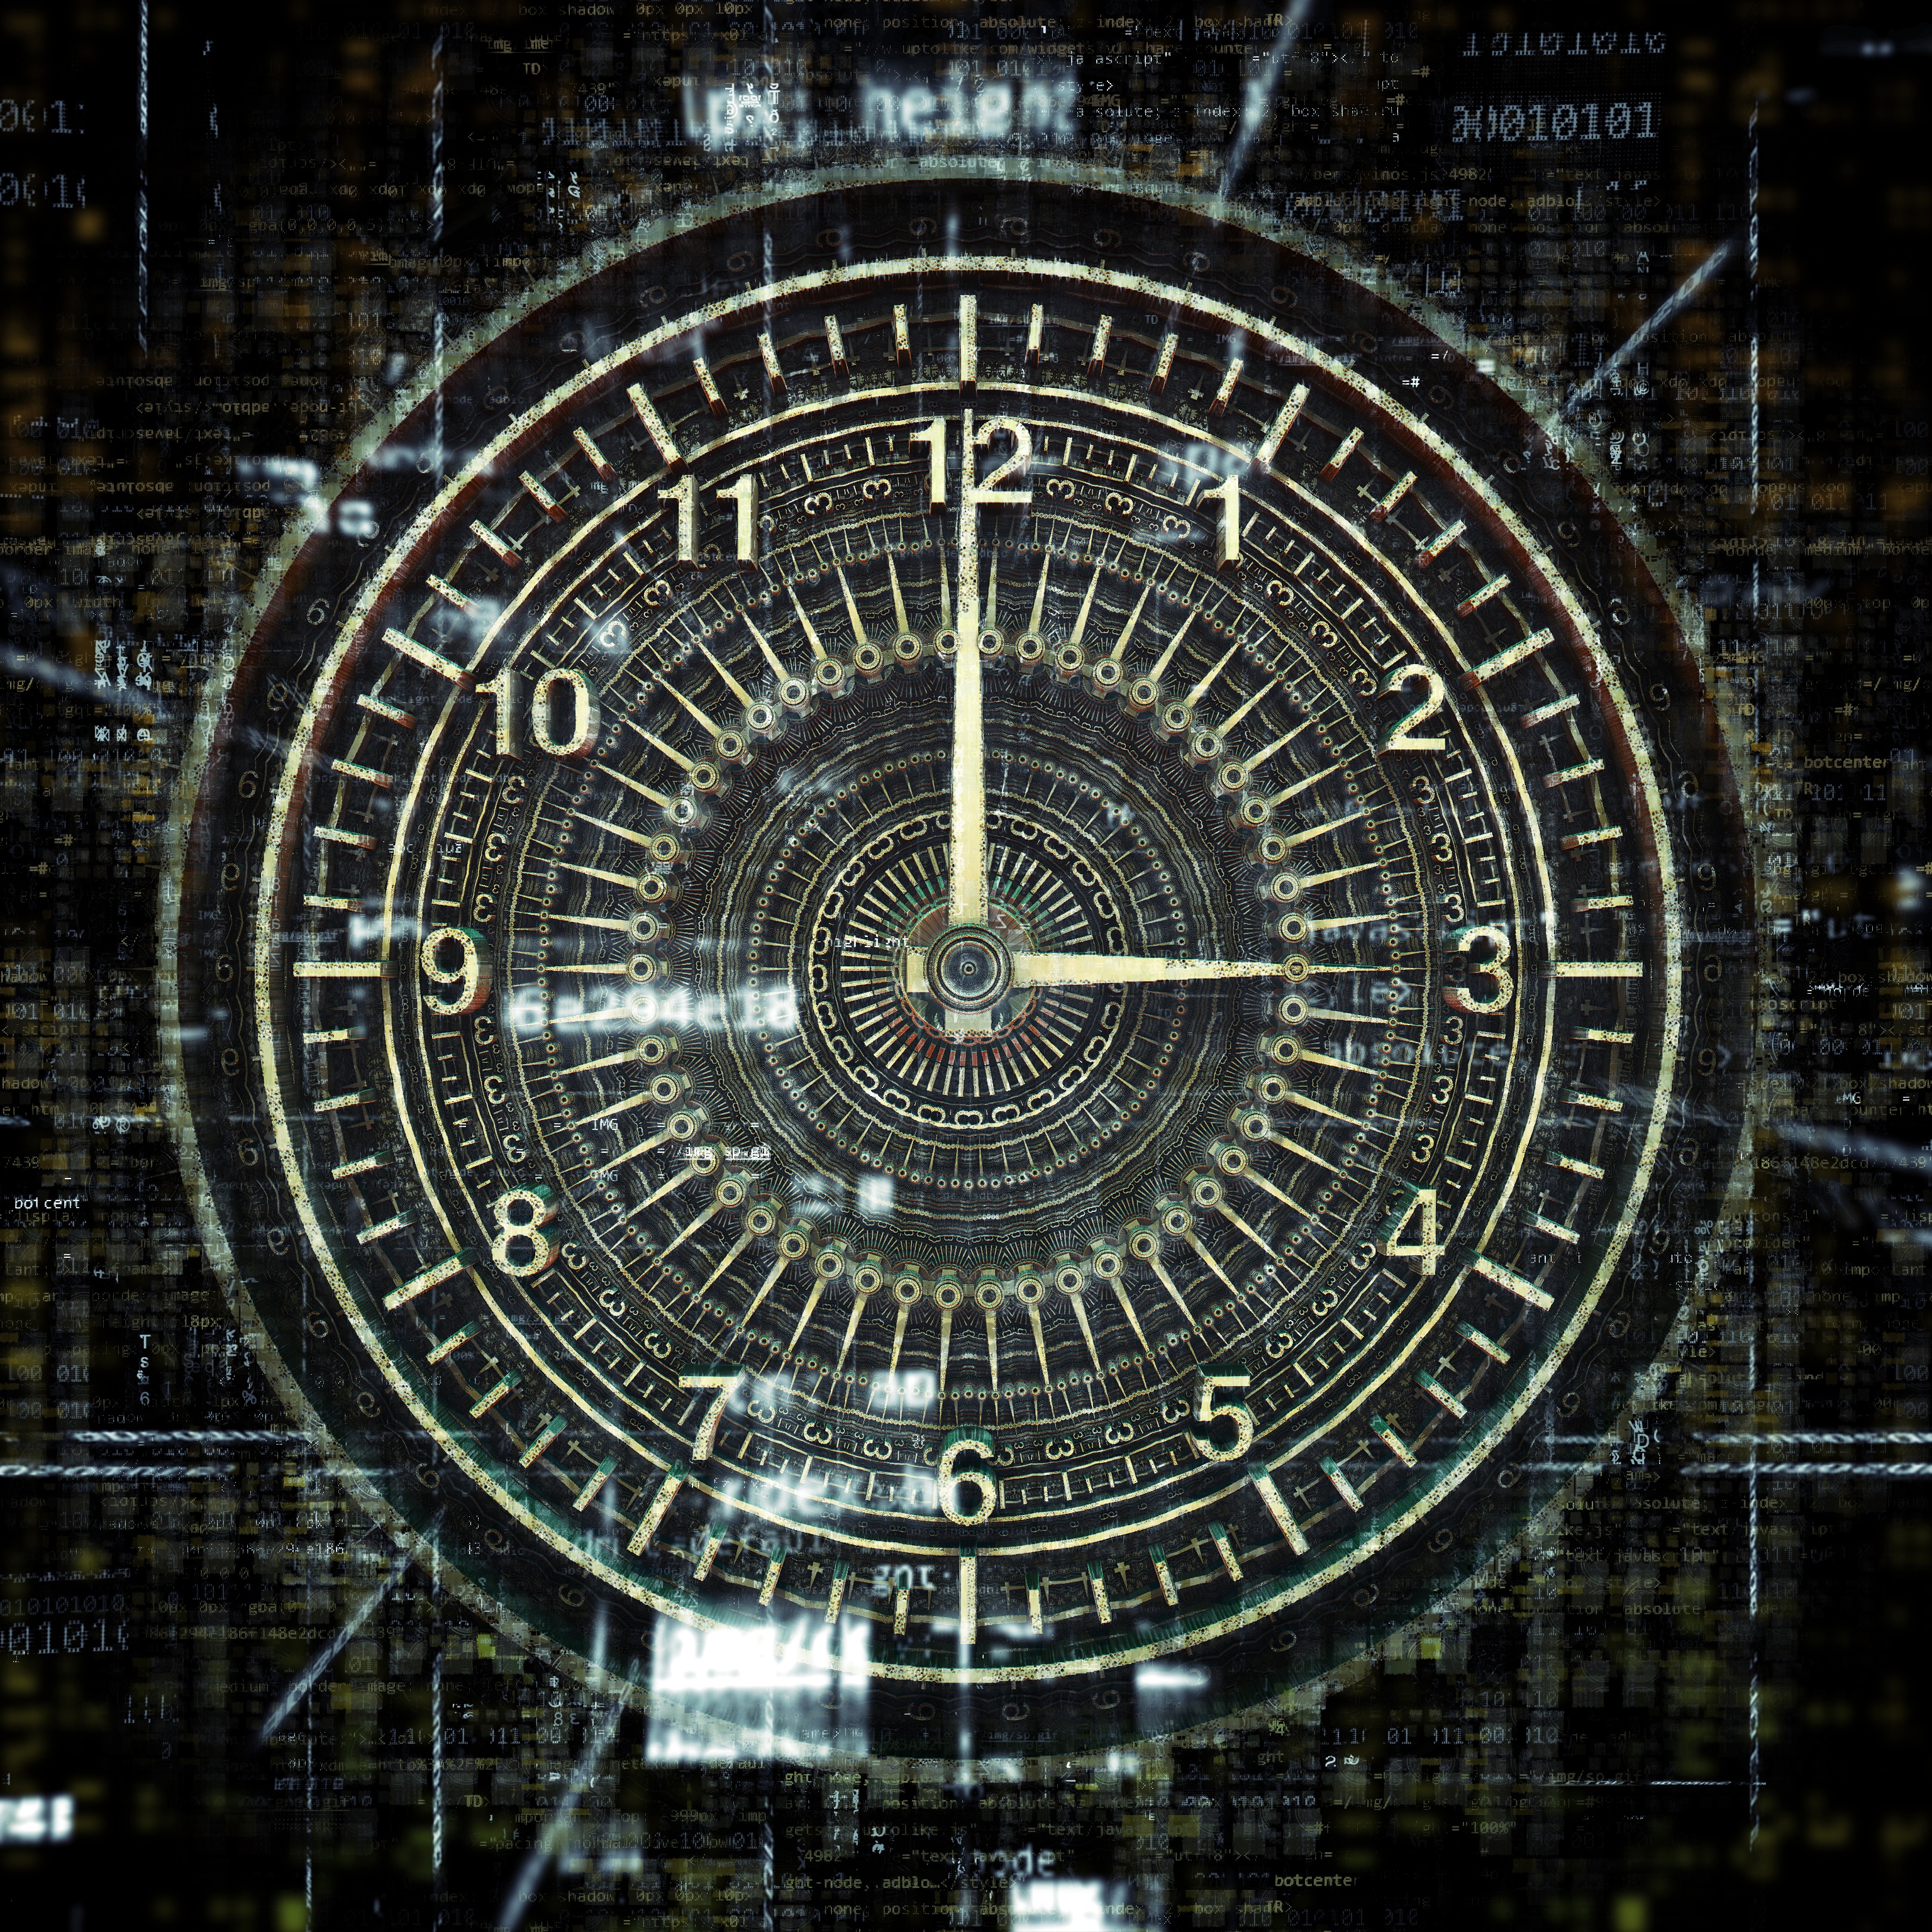 Изучение путешествие во времени. Часы "путешествие во времени". Машина для перемещения во времени. Машина времени картинки. Машина времени путешествие во времени.